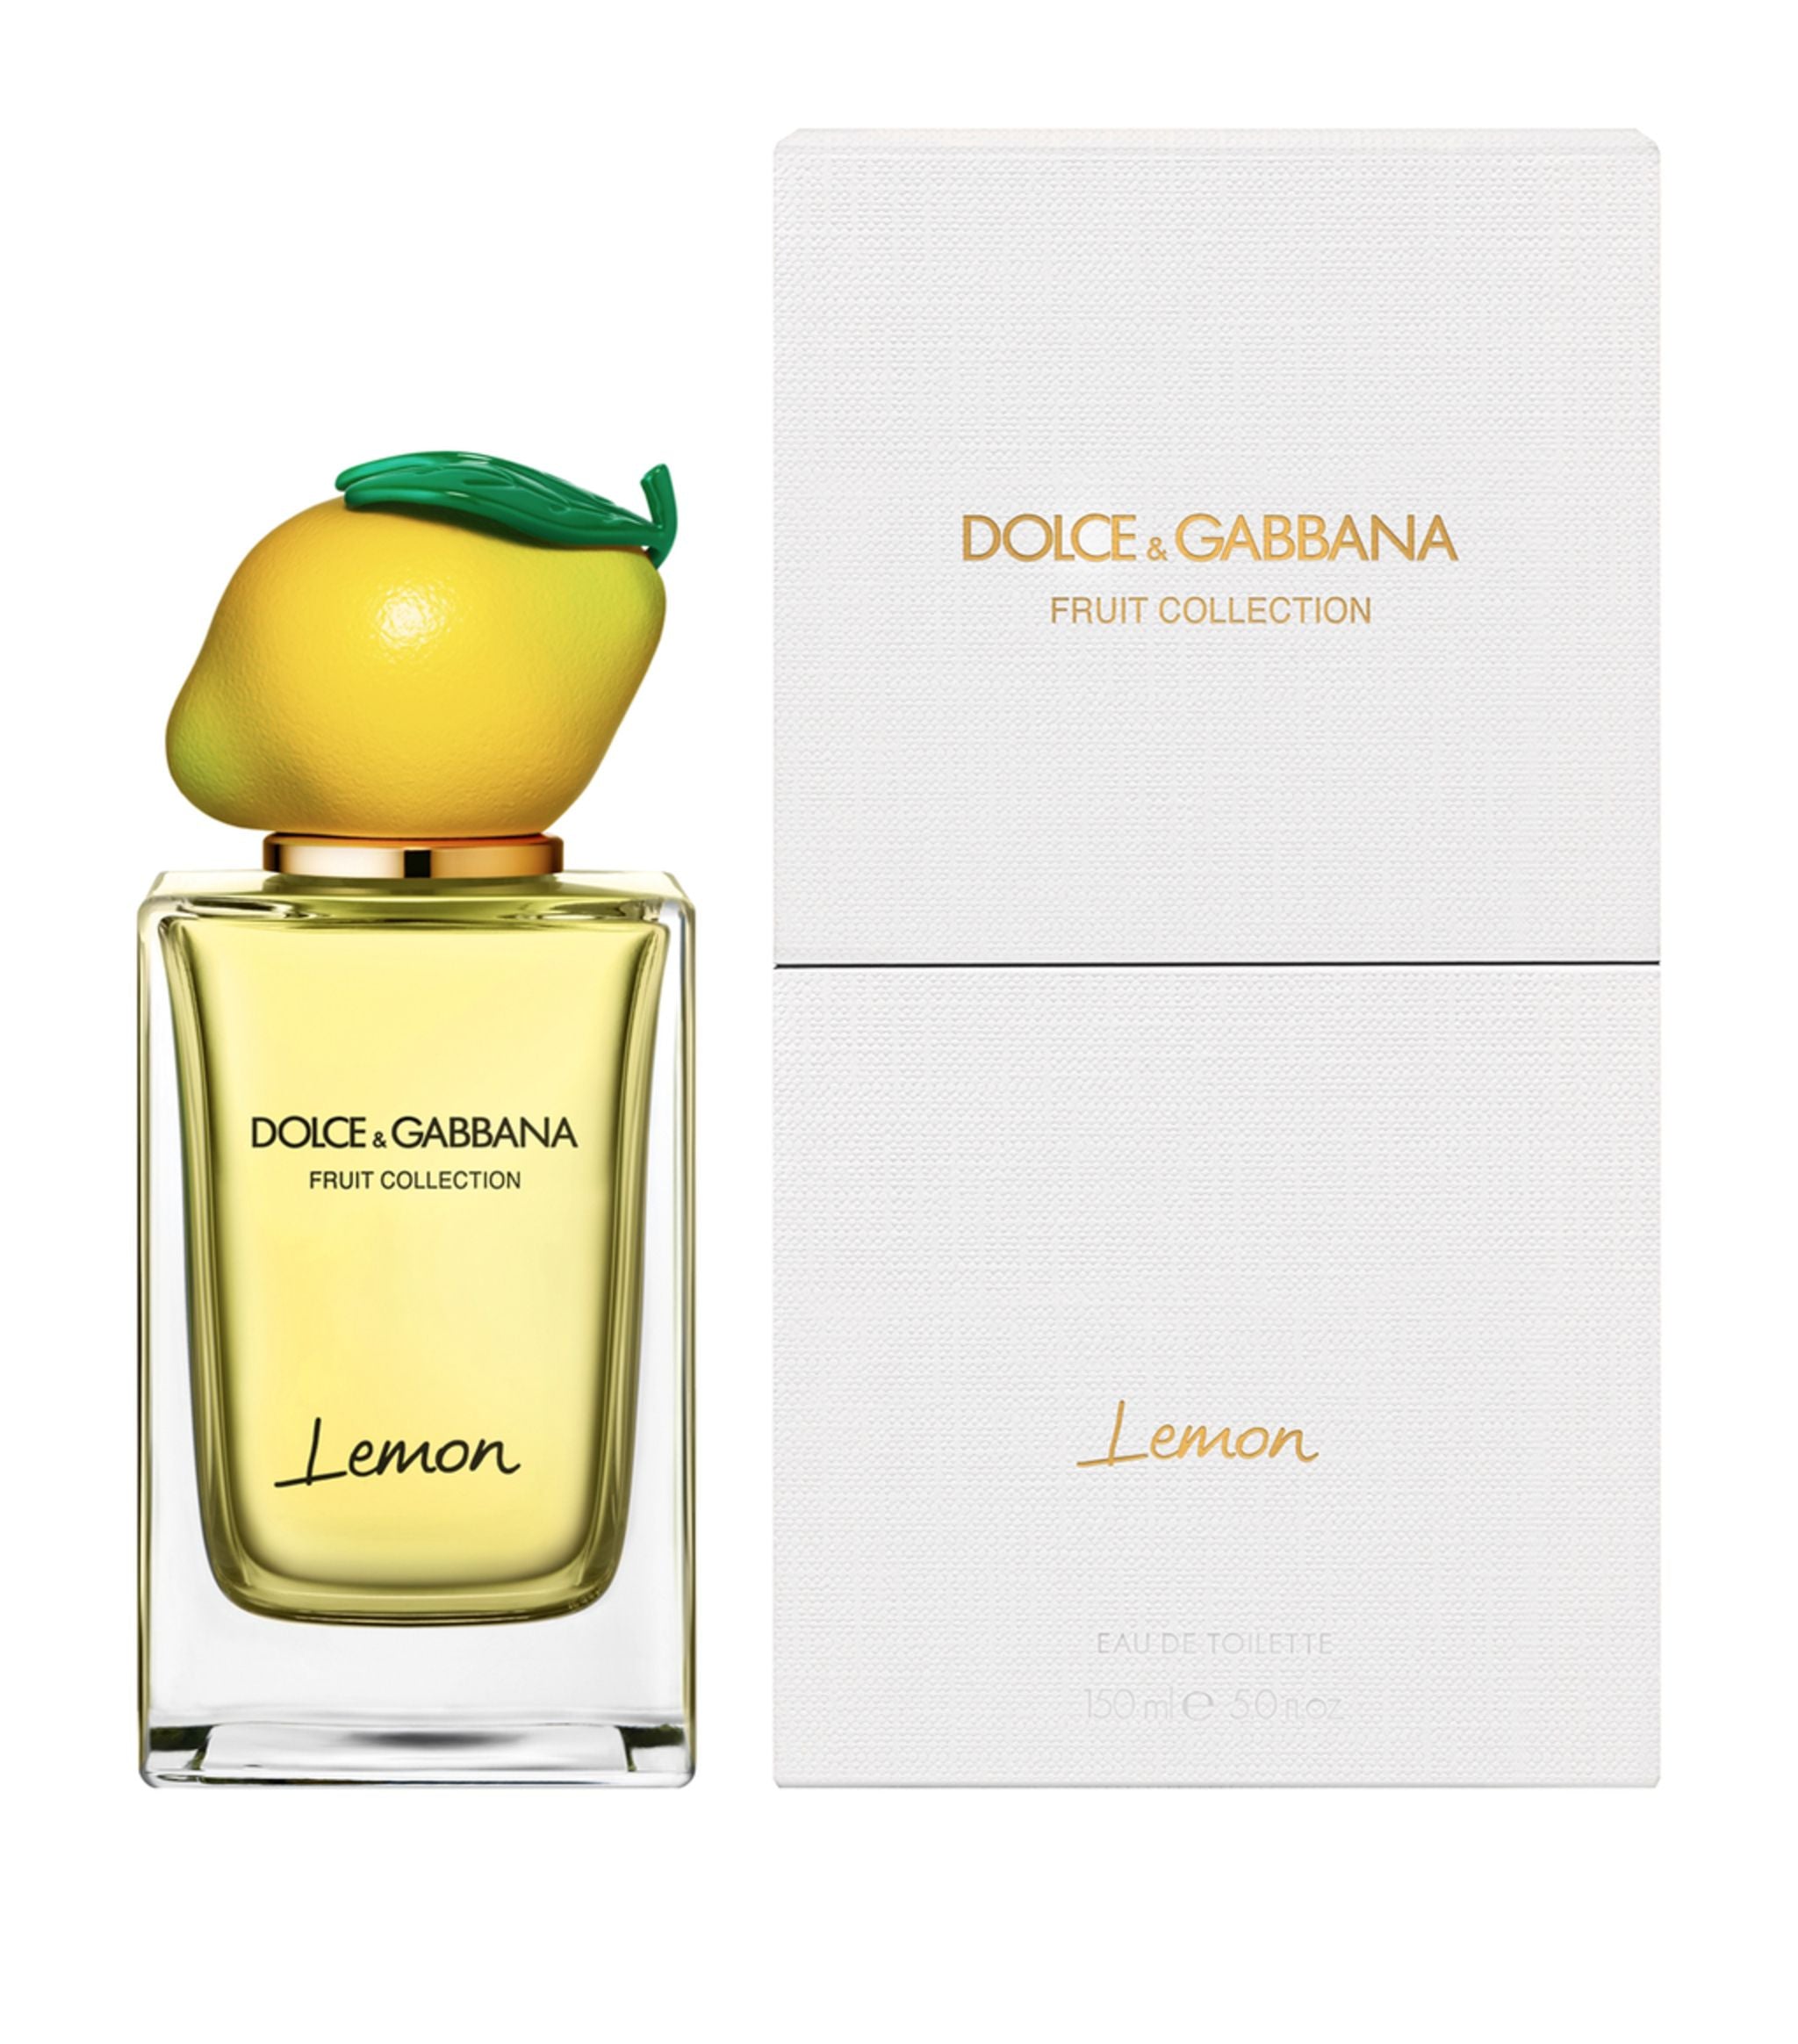 Dolce & Gabanna Fruit Collection Lemon EDT 150ml